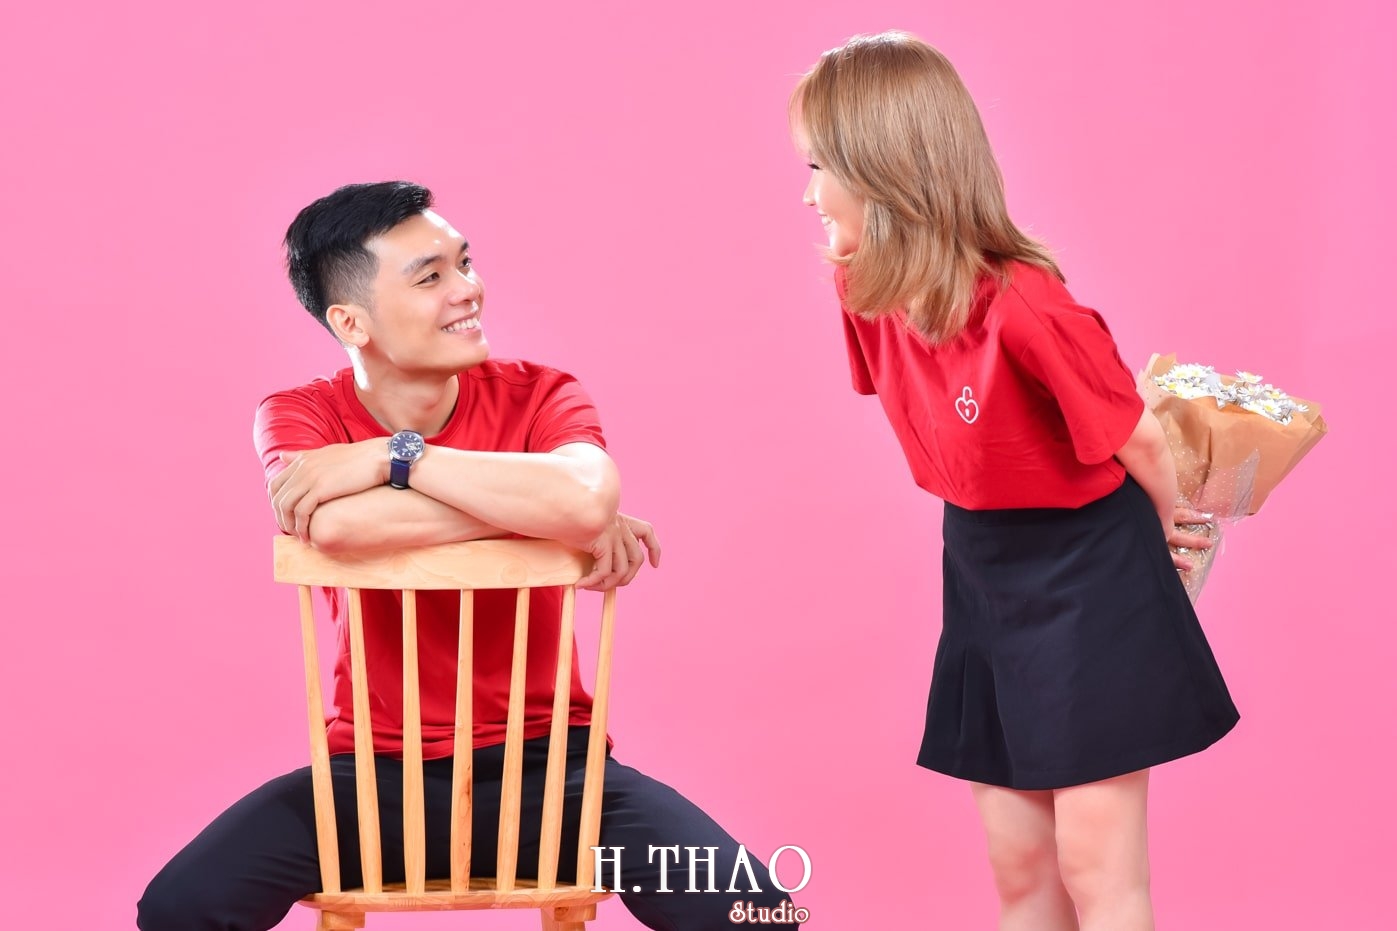 Anh couple 9 min - 3 concept chụp ảnh với người yêu đẹp mà chất - HThao Studio